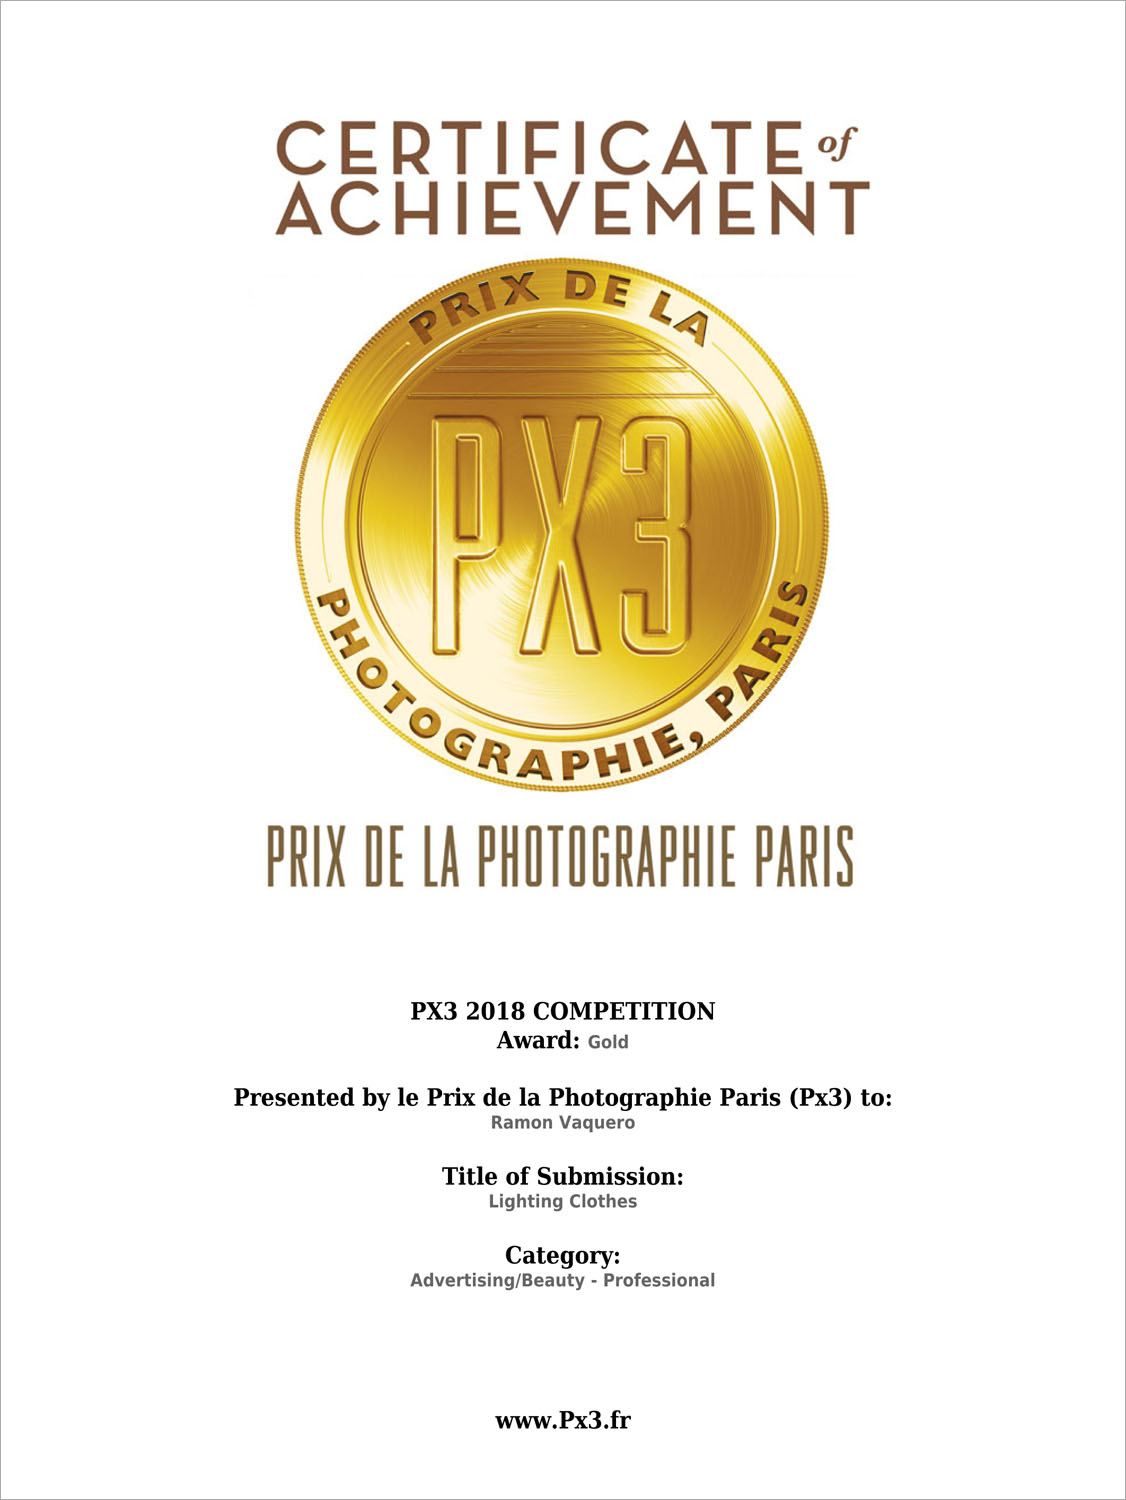 ramon_vaquero_gold_award_px3_paris